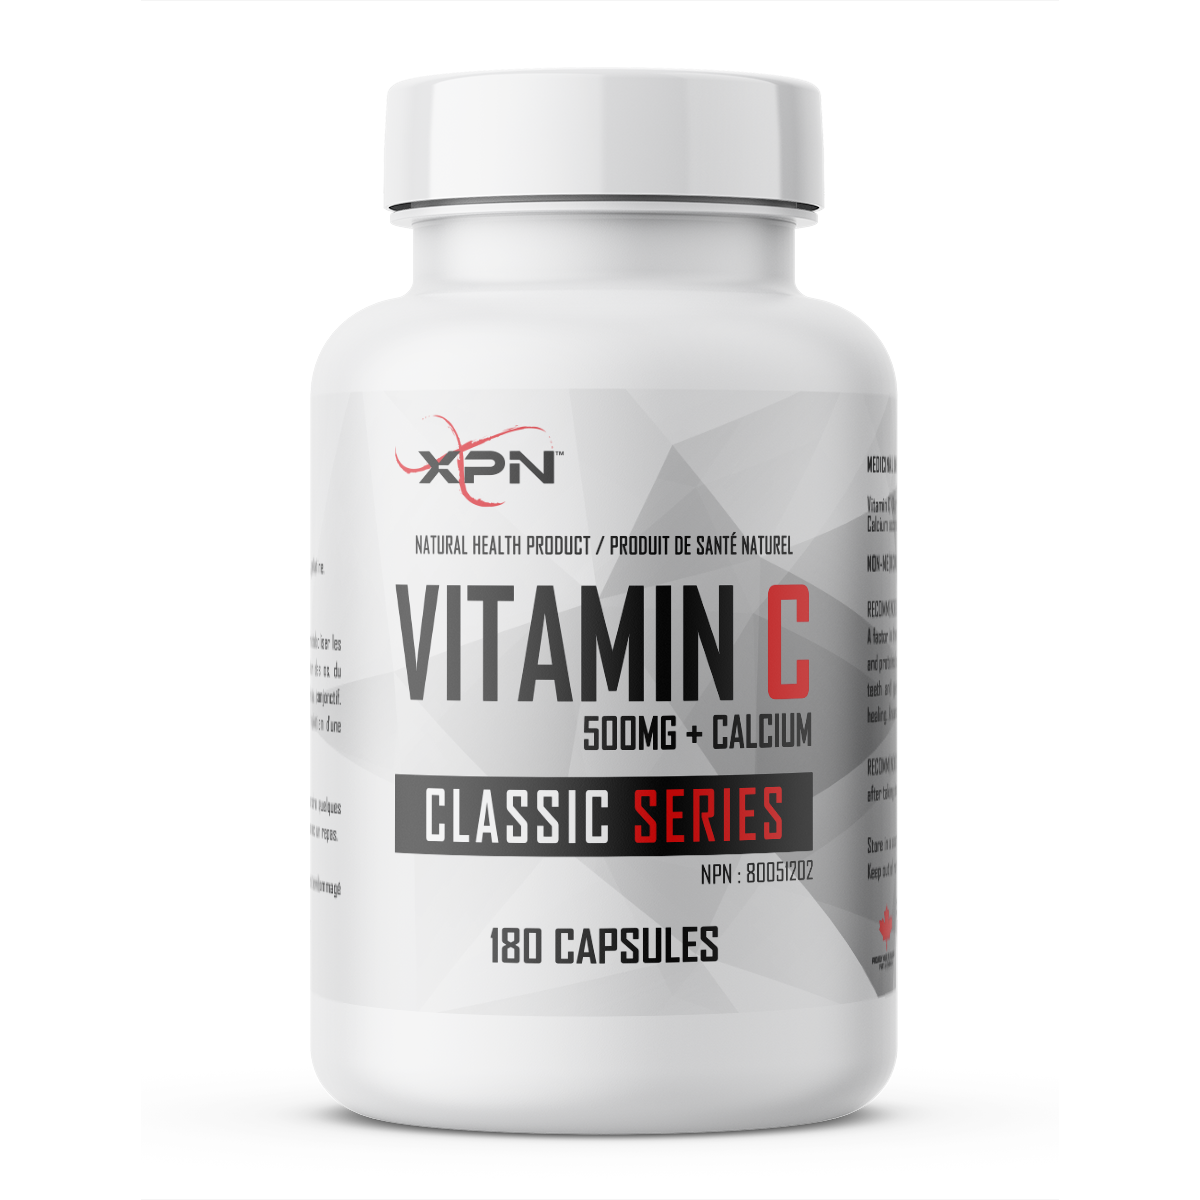 Vitamin C500 + Calcium